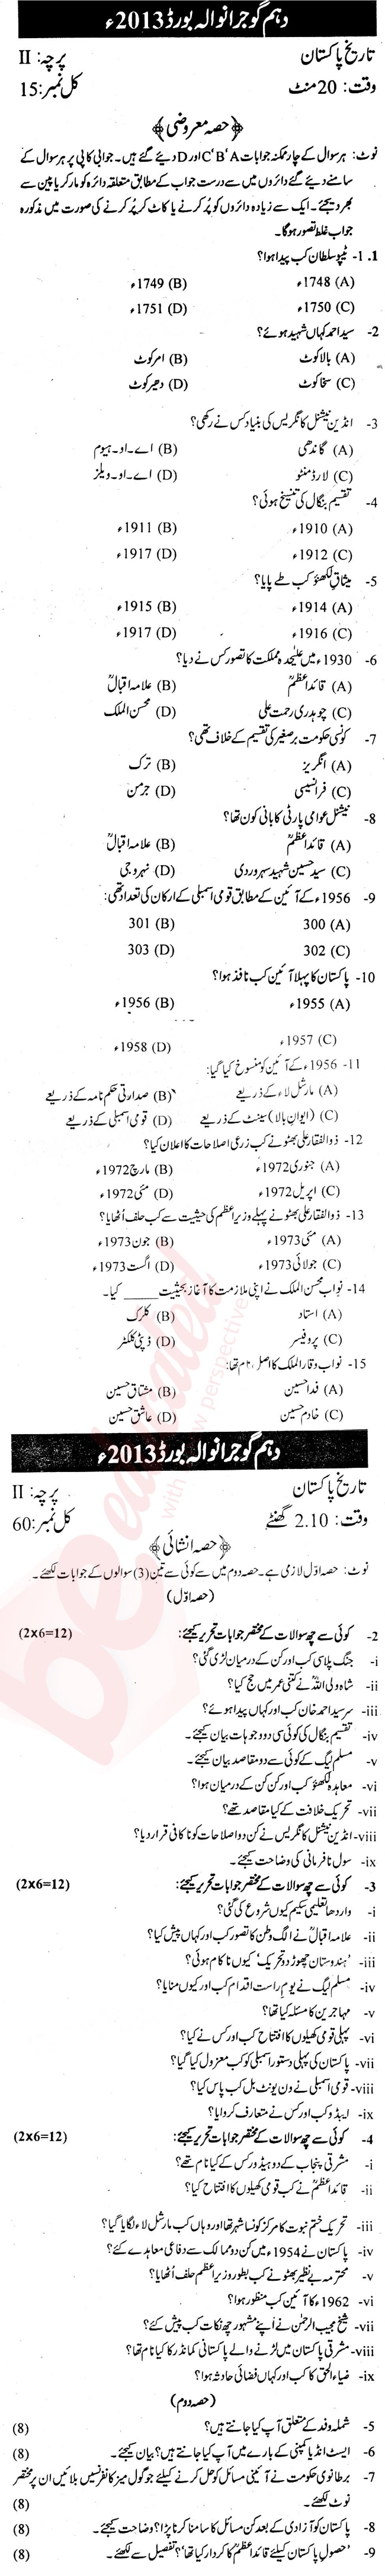 Pakistan History 10th Urdu Medium Past Paper Group 1 BISE Gujranwala 2013